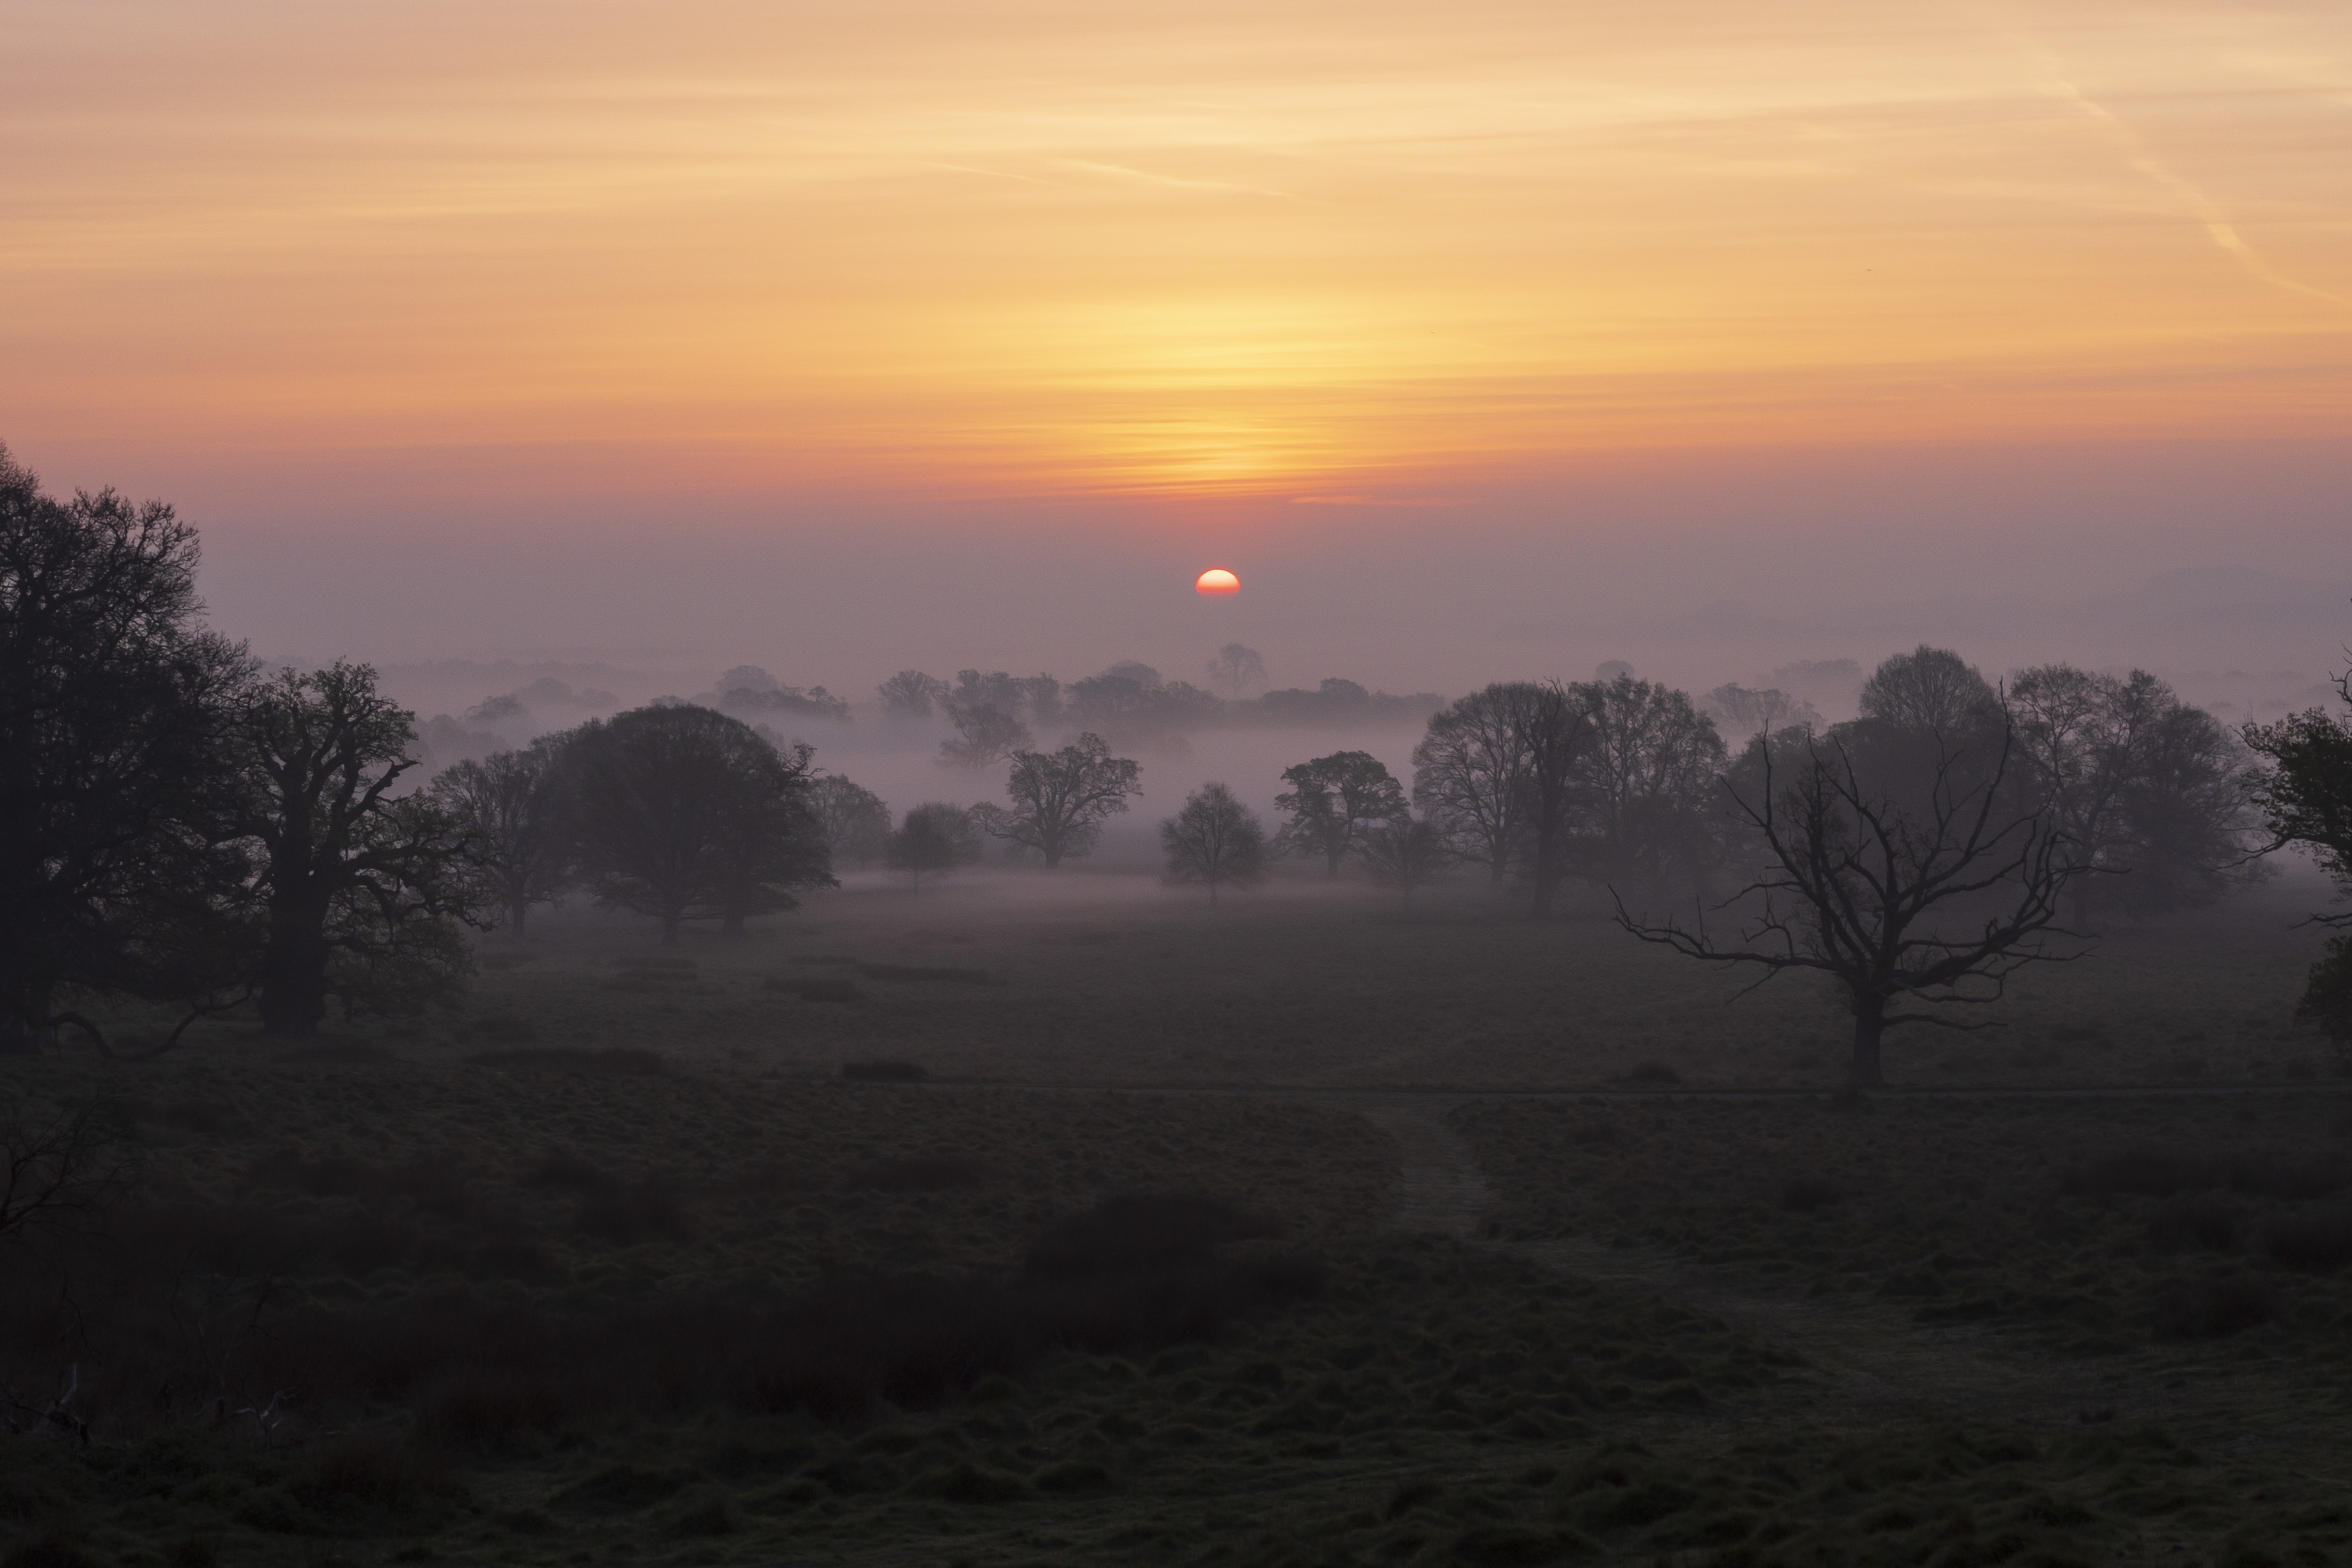 A sunrise over a misty landscape